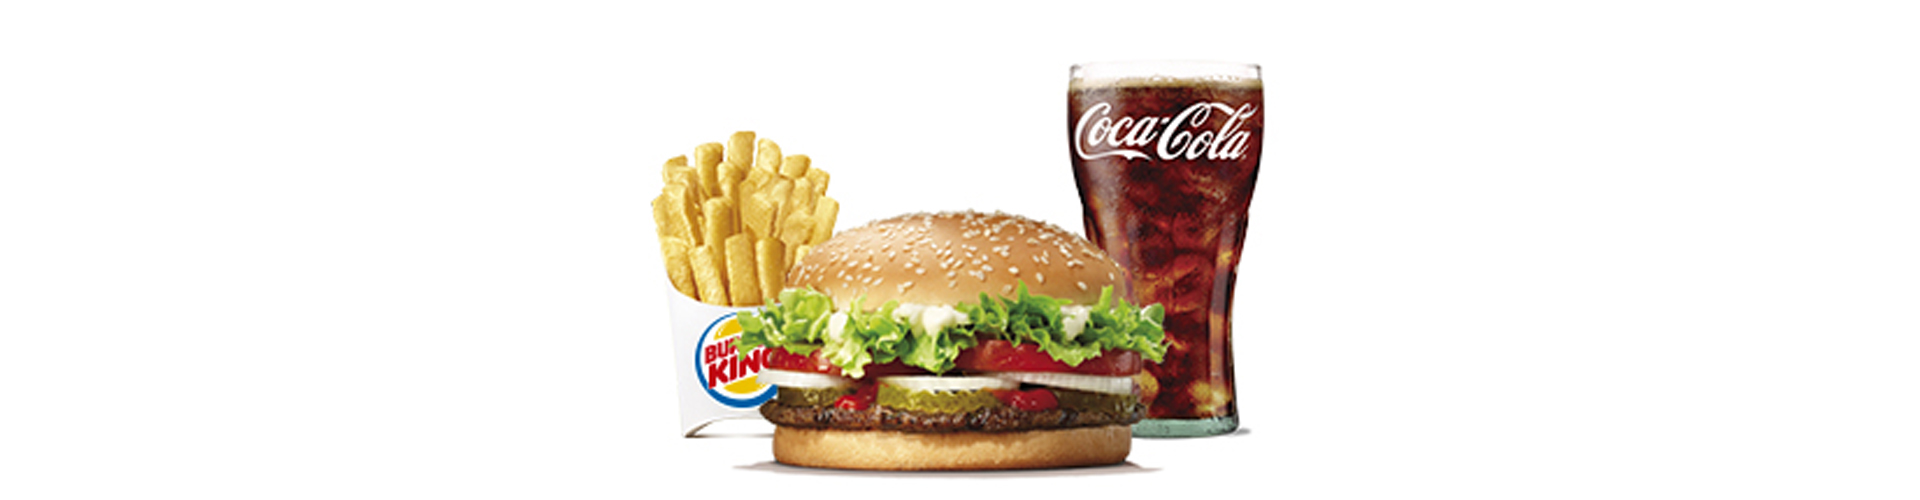 menu-whopper-burgerking-40001707-cerveza-aros